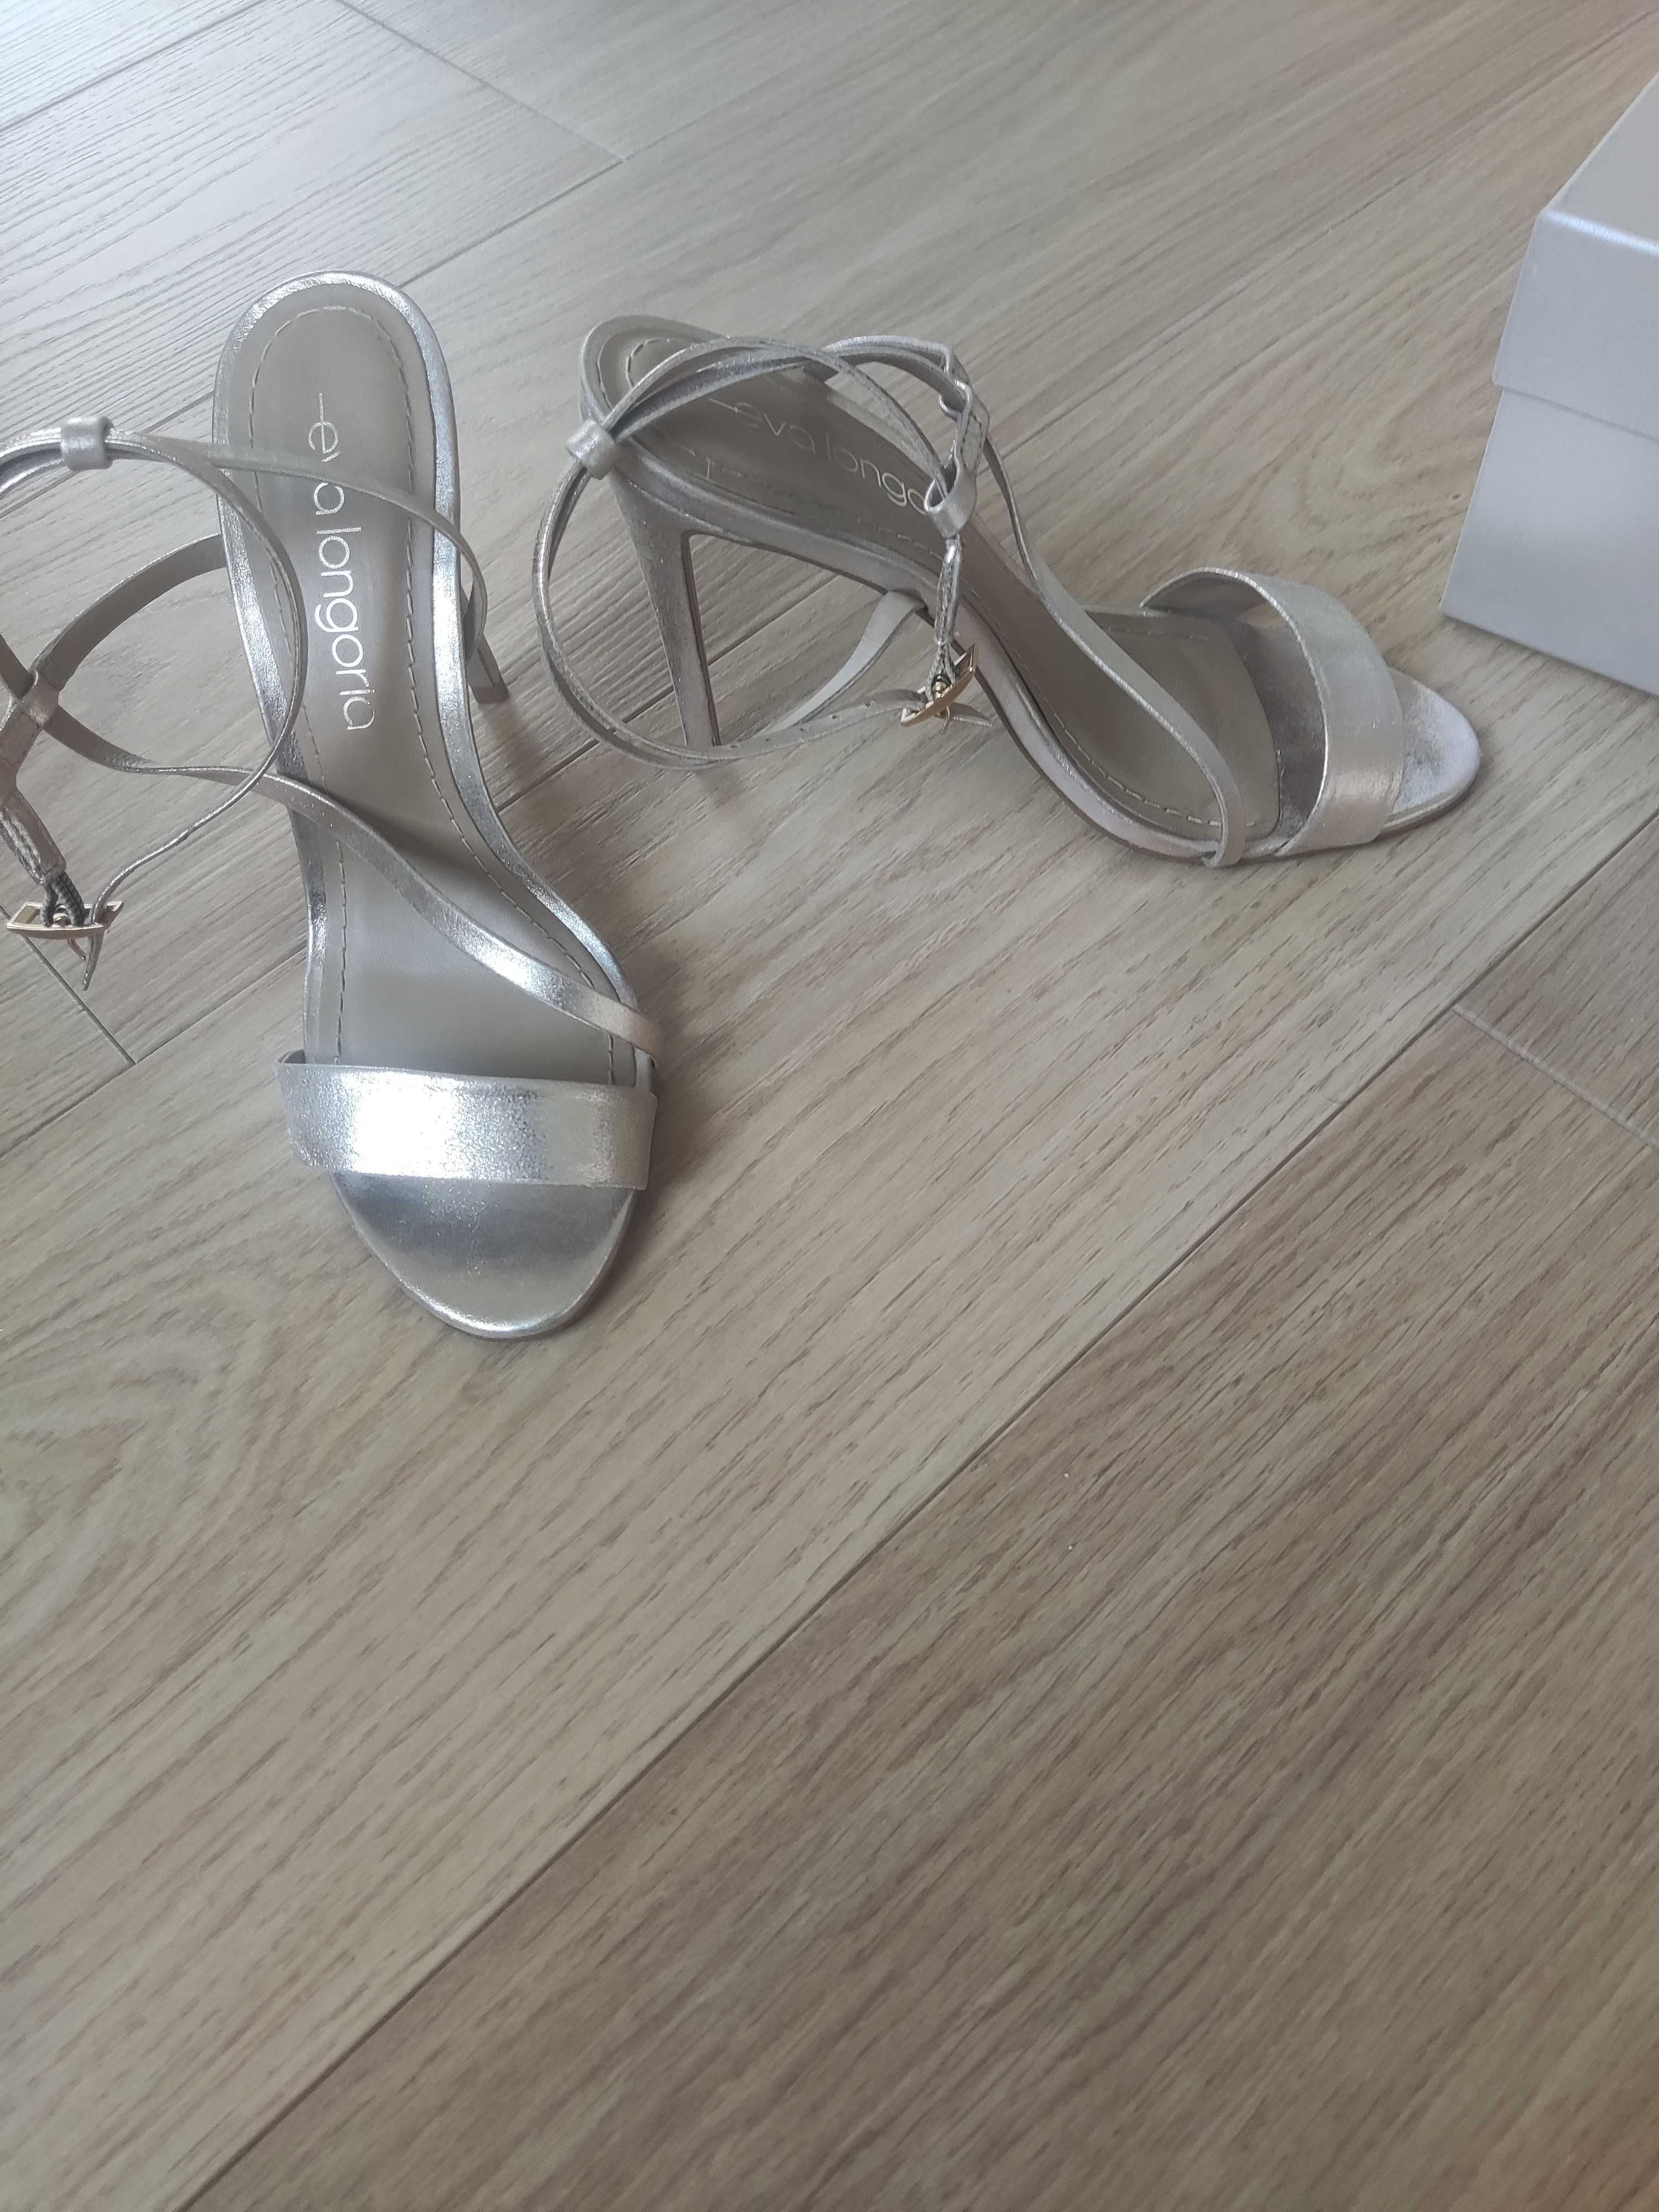 Златни обувки Eva Longoria, 38 номер, естествена кожа